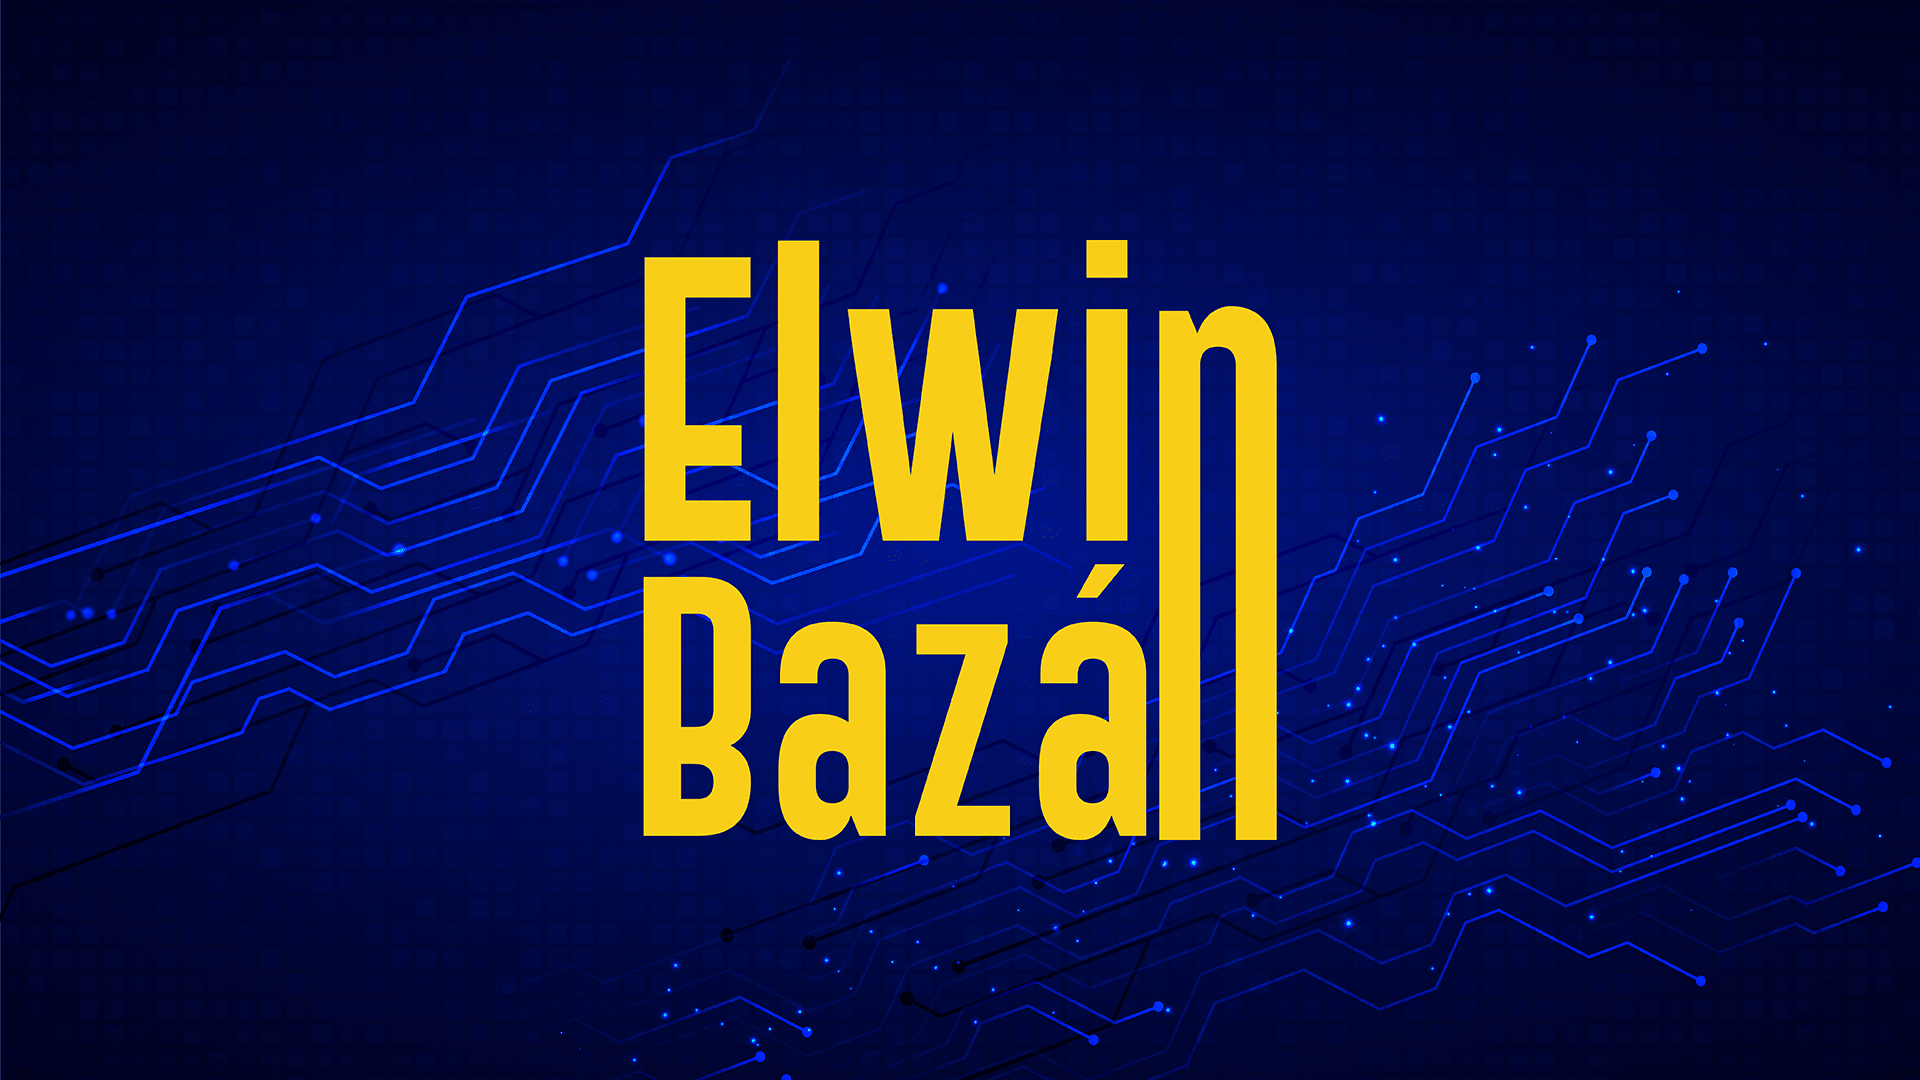 Camp - Elwin Bazan